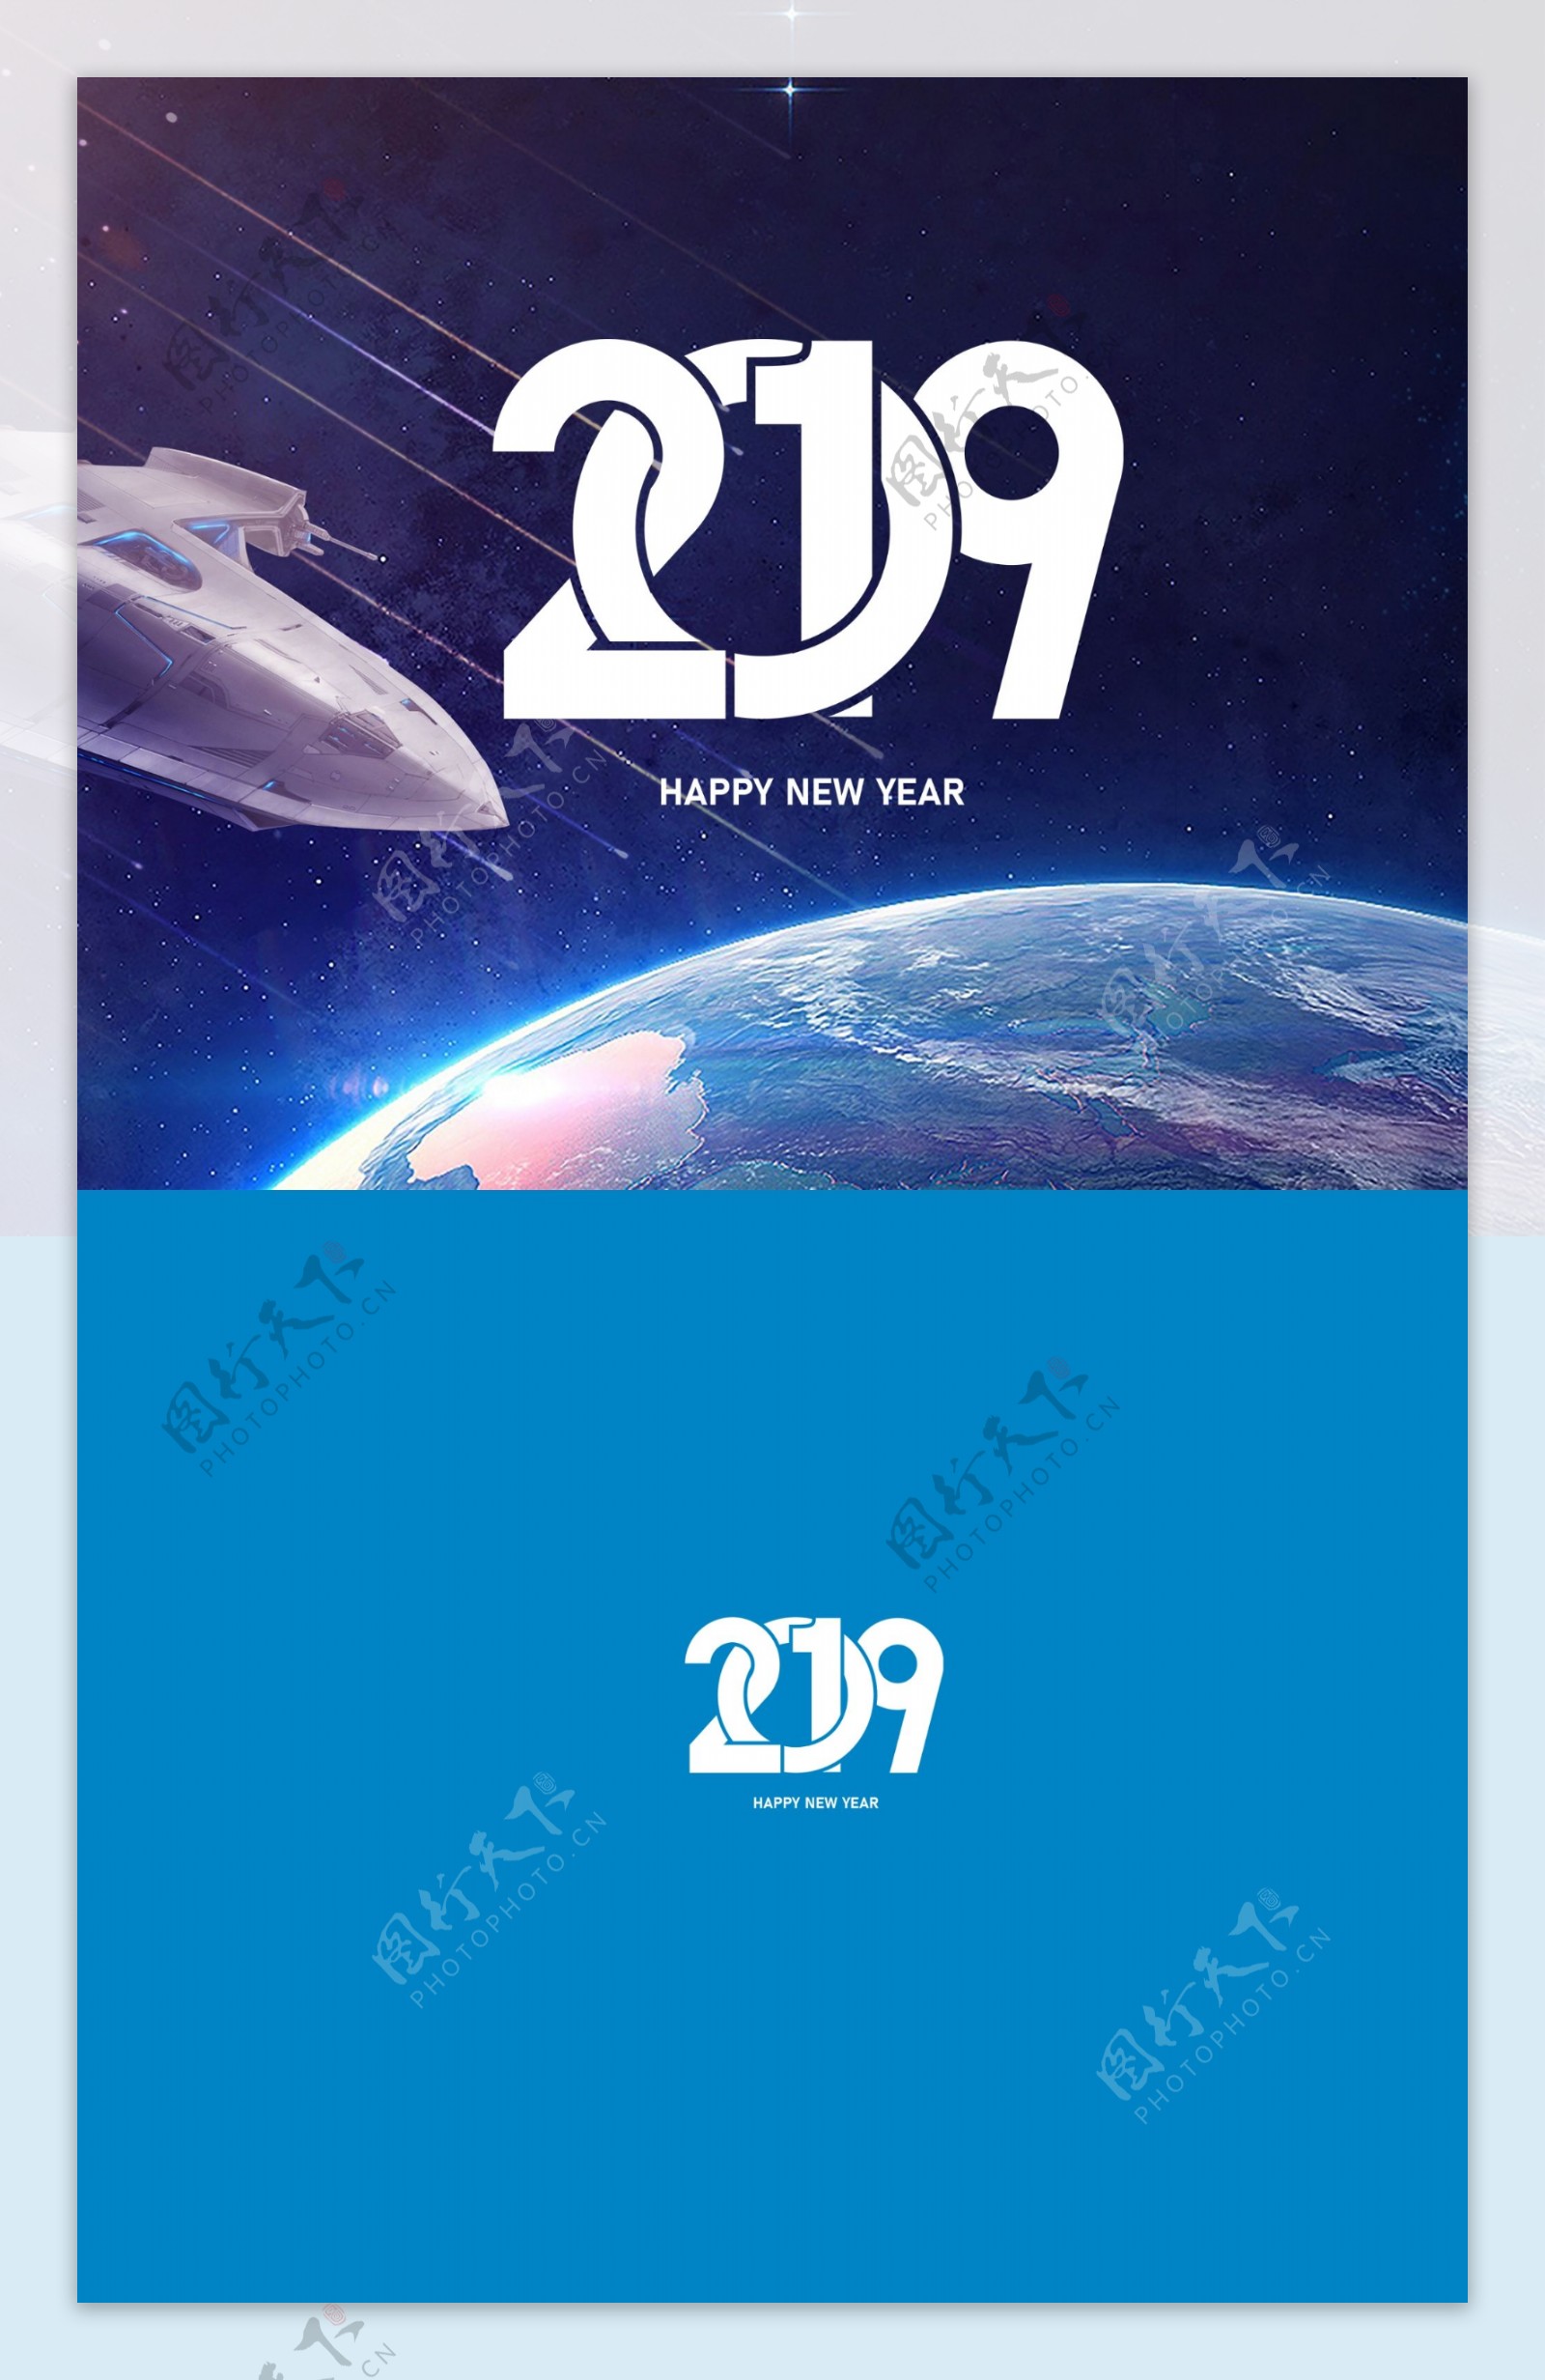 2019太空旅行台历